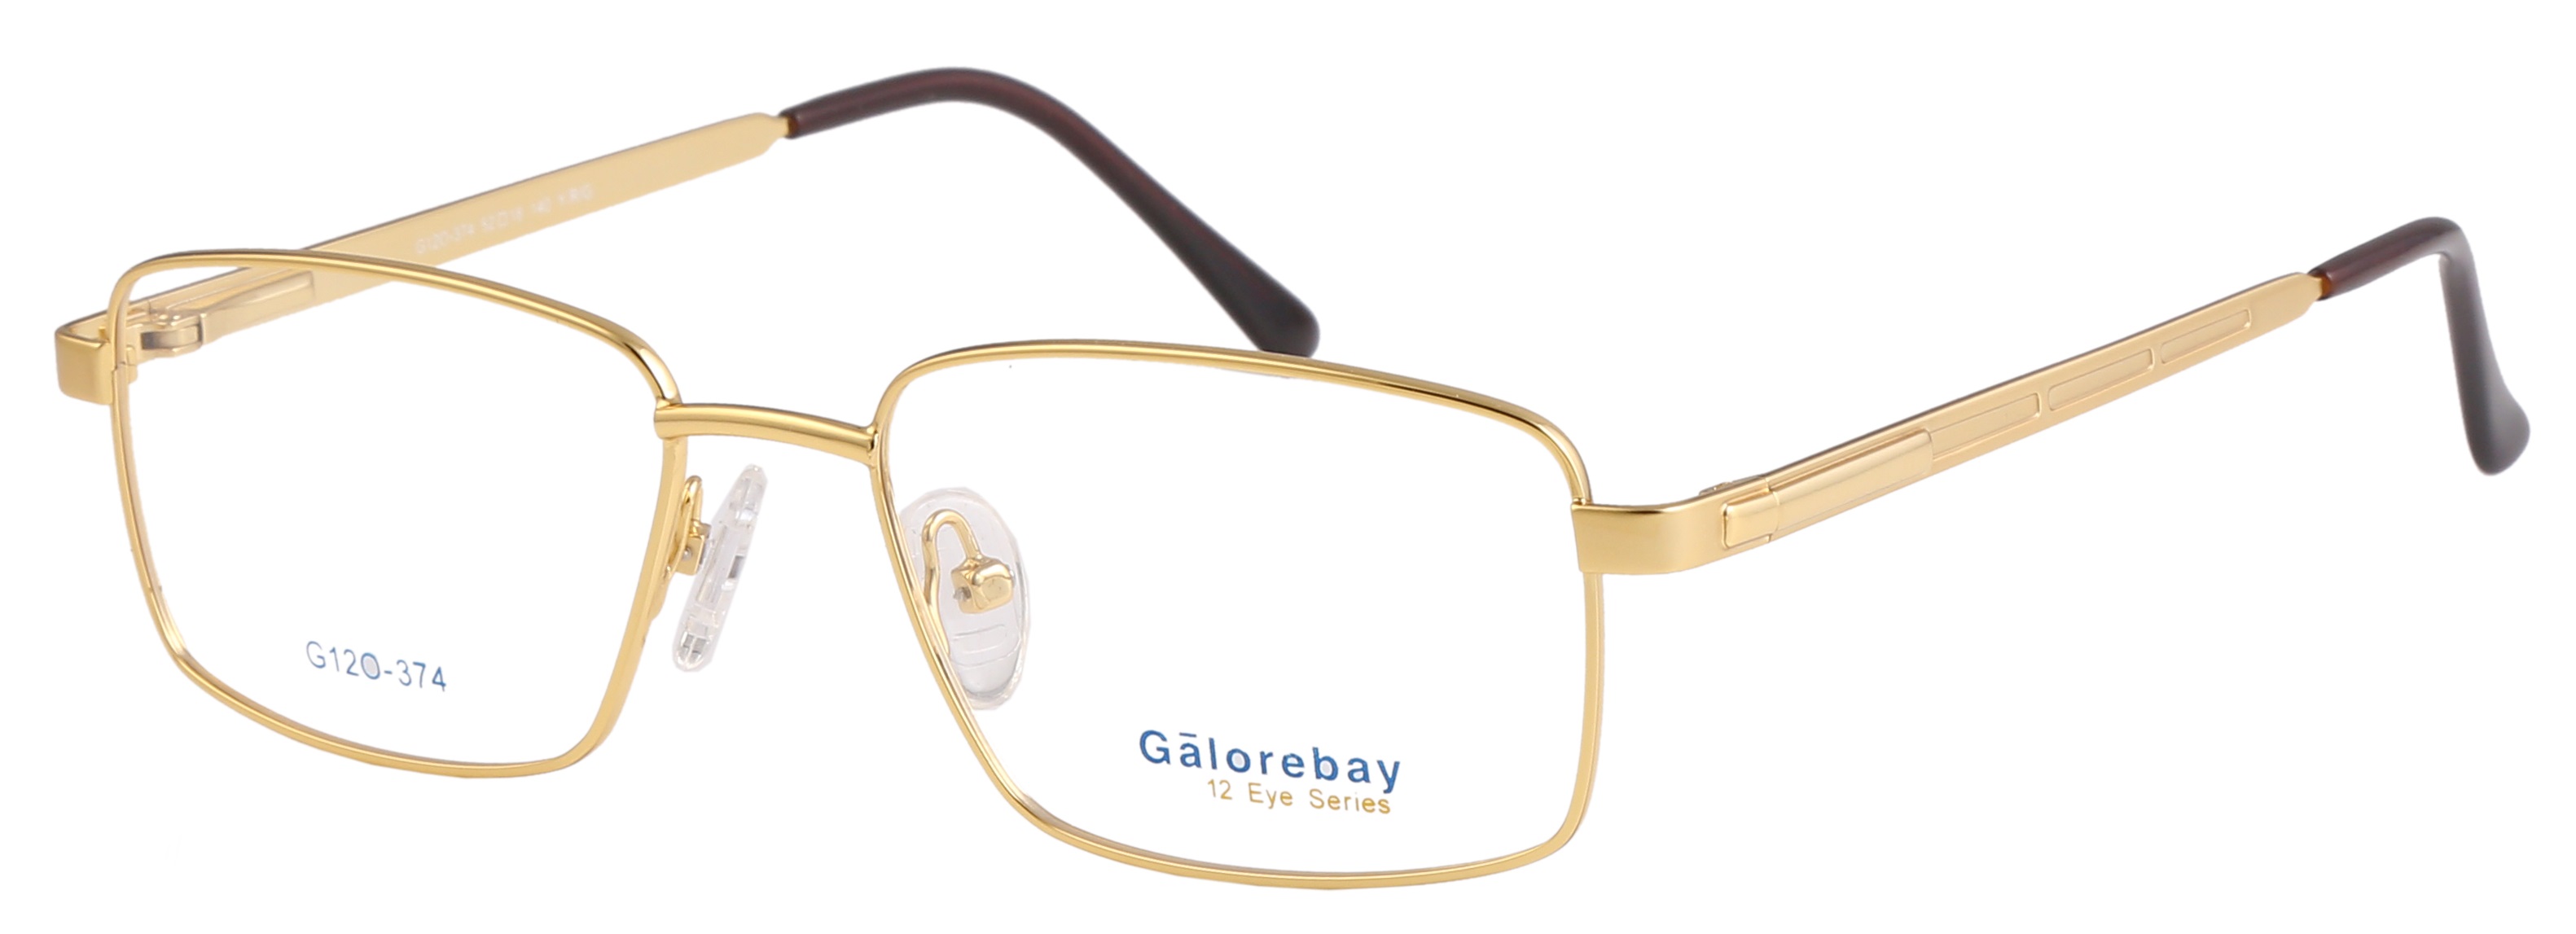 Galorebay Model No.-G120-374